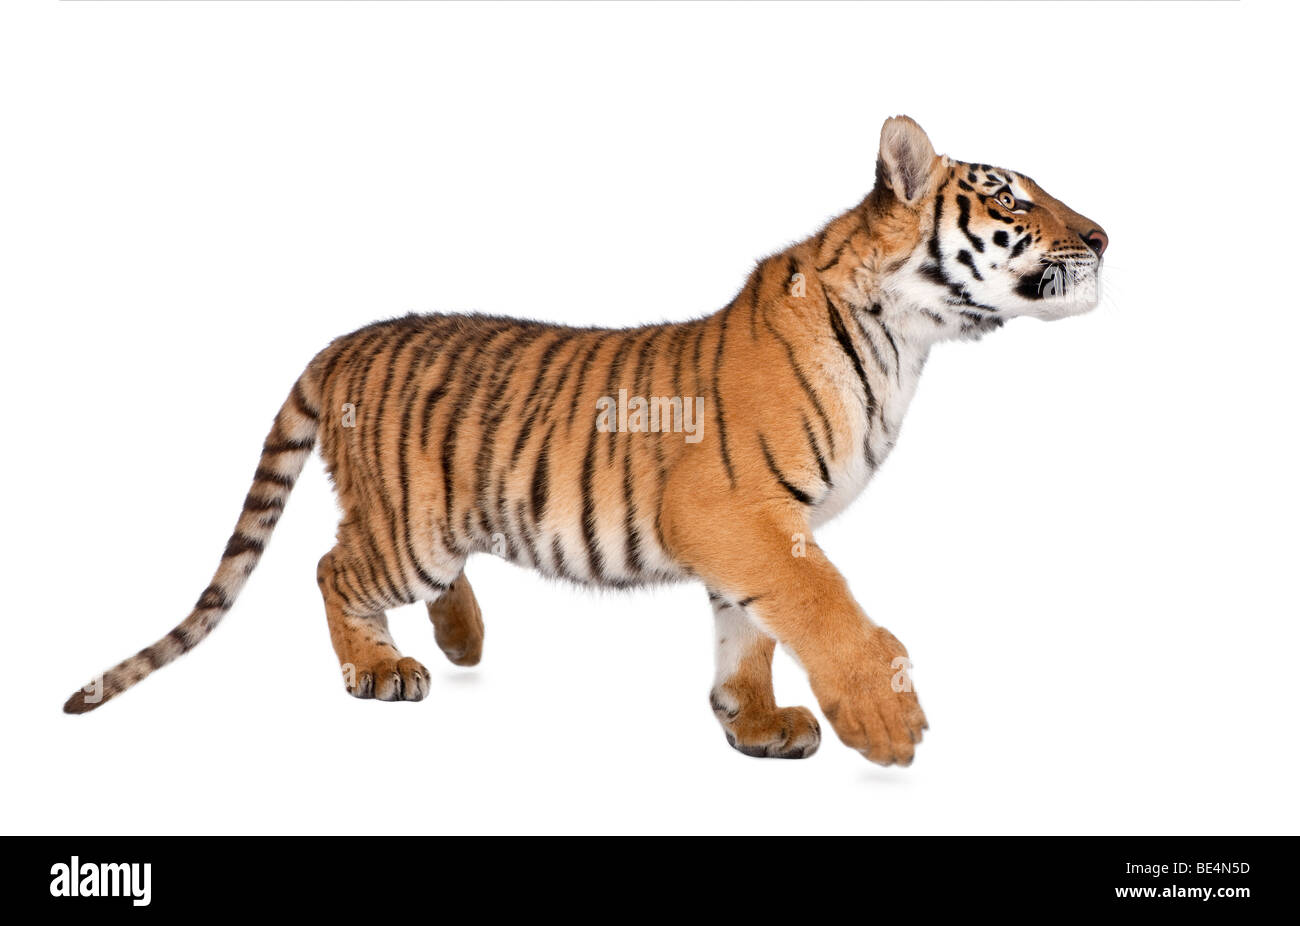 Bengal Tiger, Panthera tigris tigris, 1 year old, walking in front of white background, studio shot Stock Photo